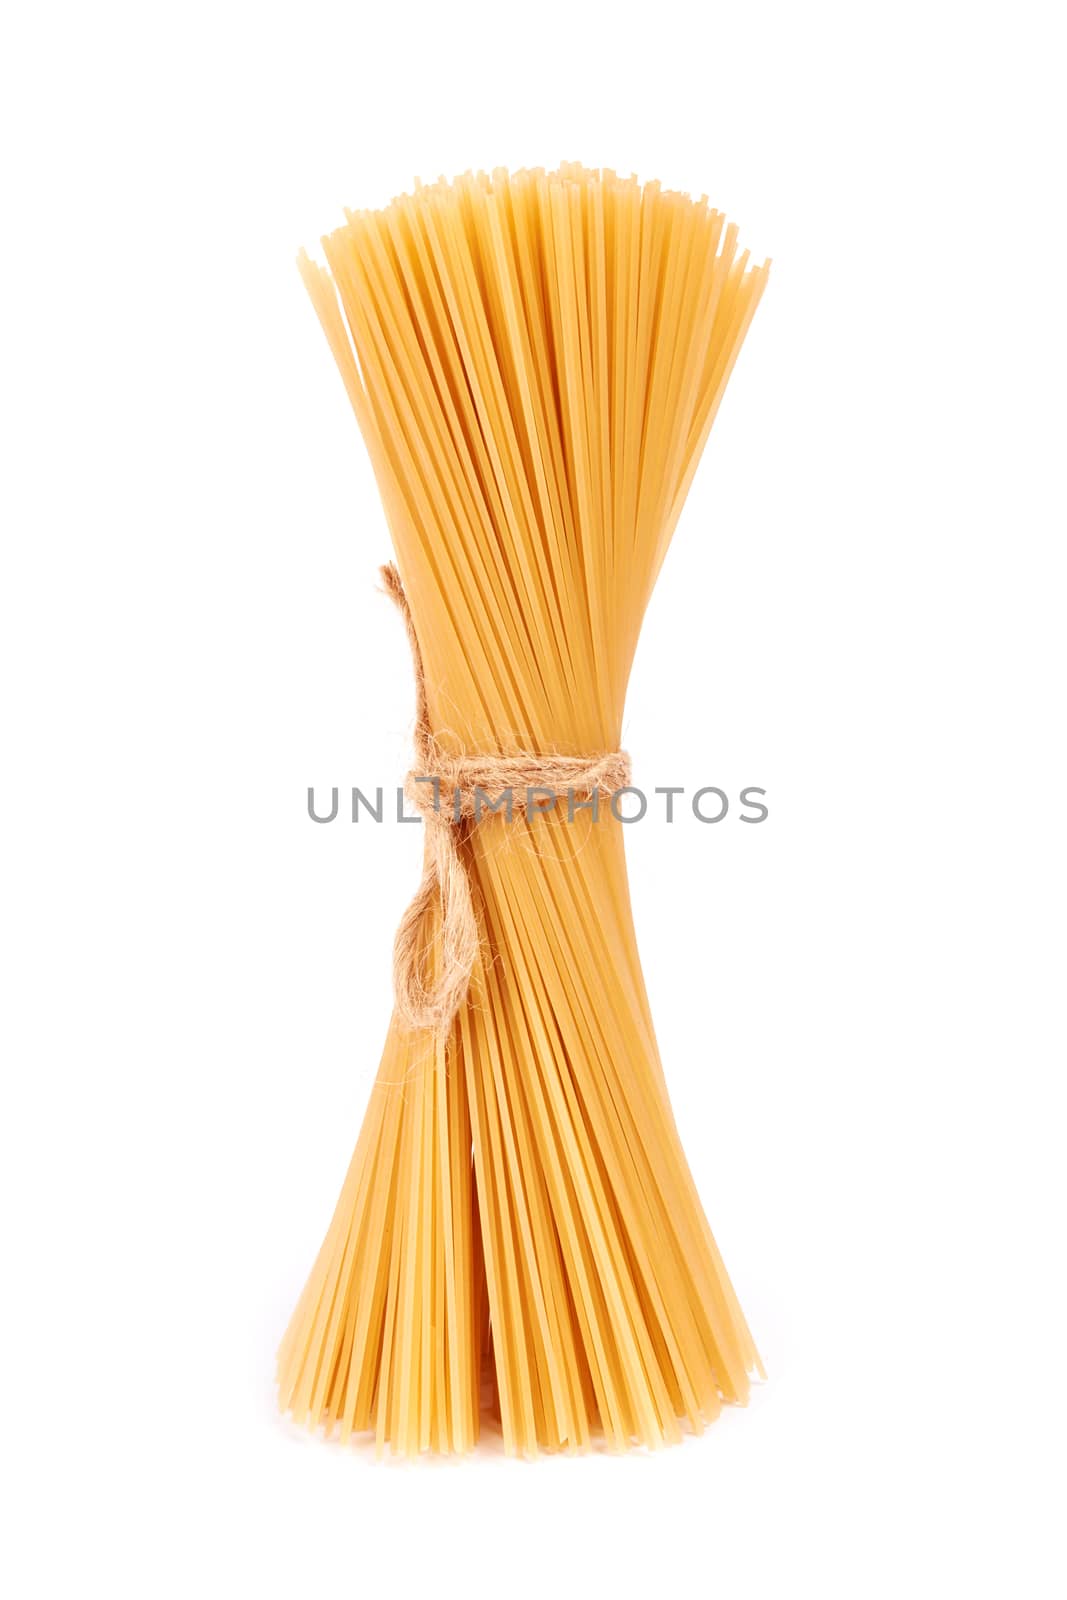 raw spaghetti by pioneer111